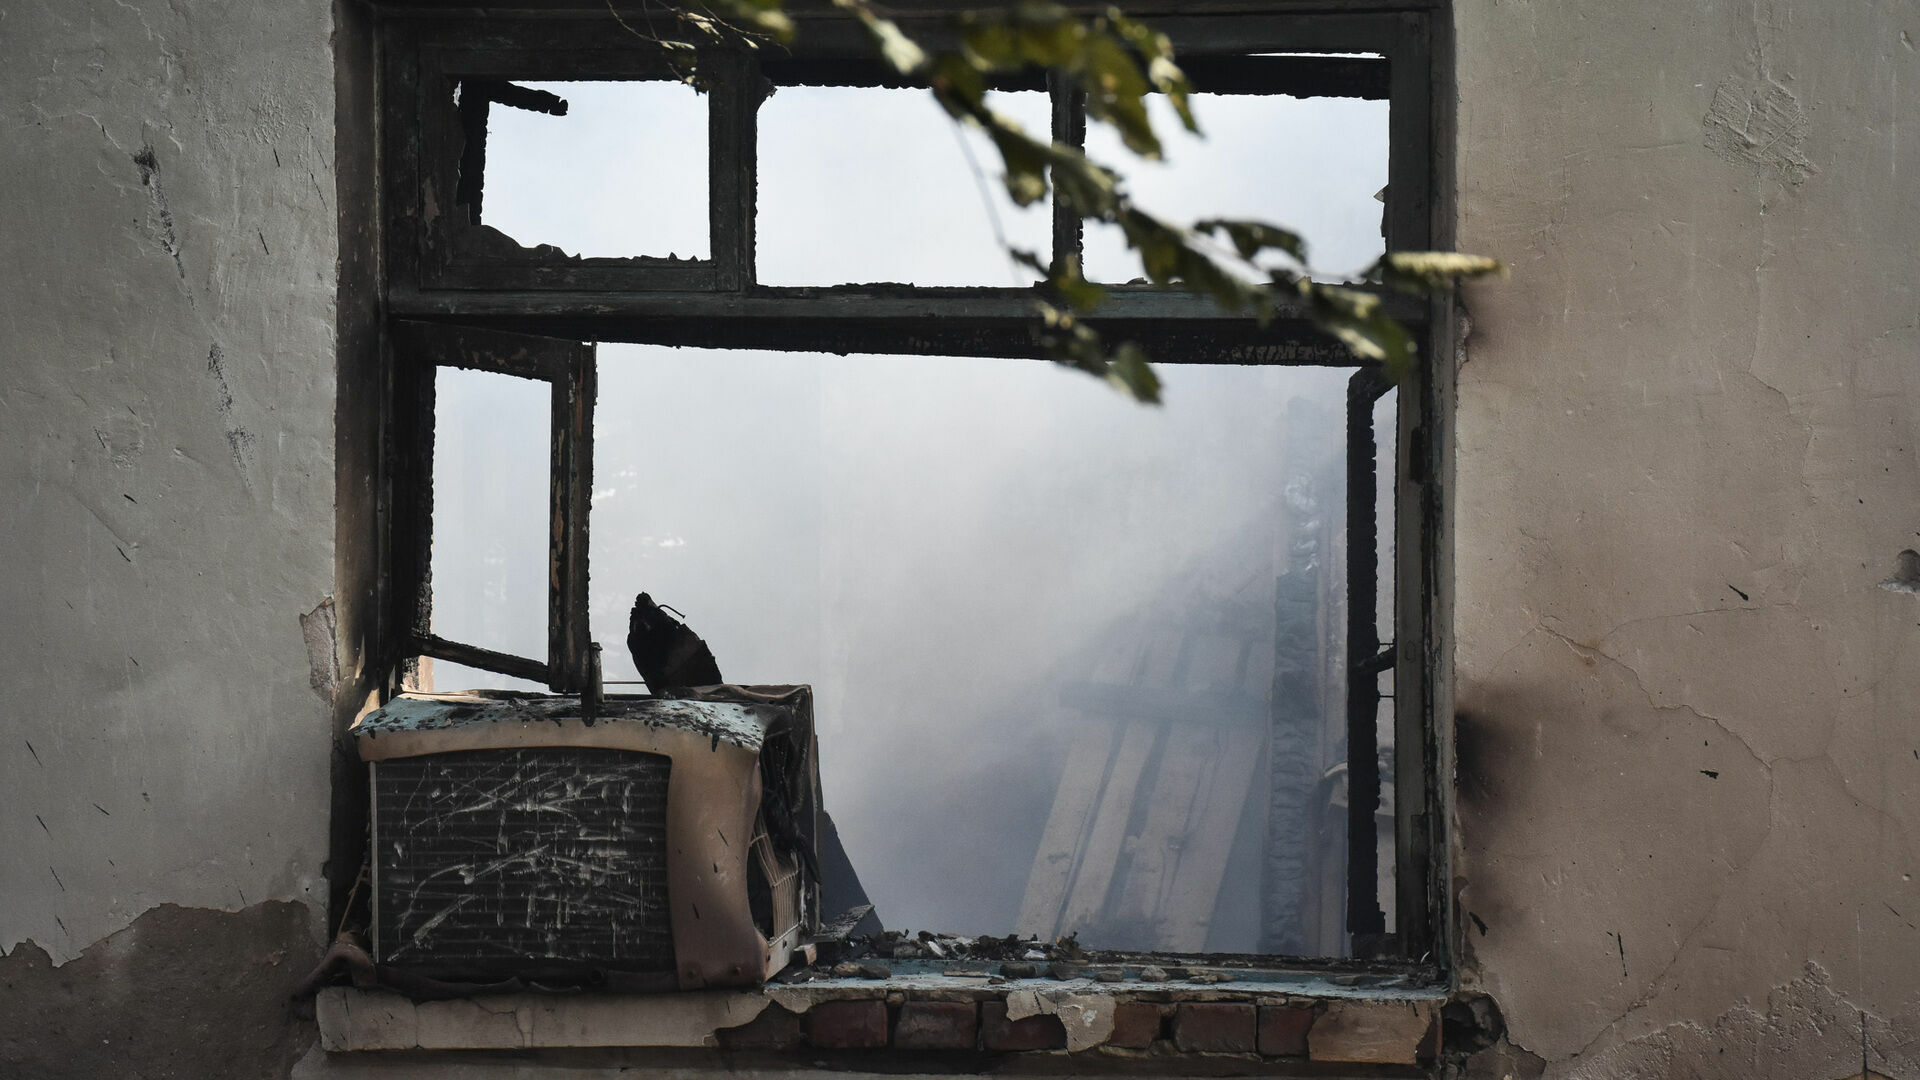 27 ноября в Поповке Ростовской области на поминках сгорел дом